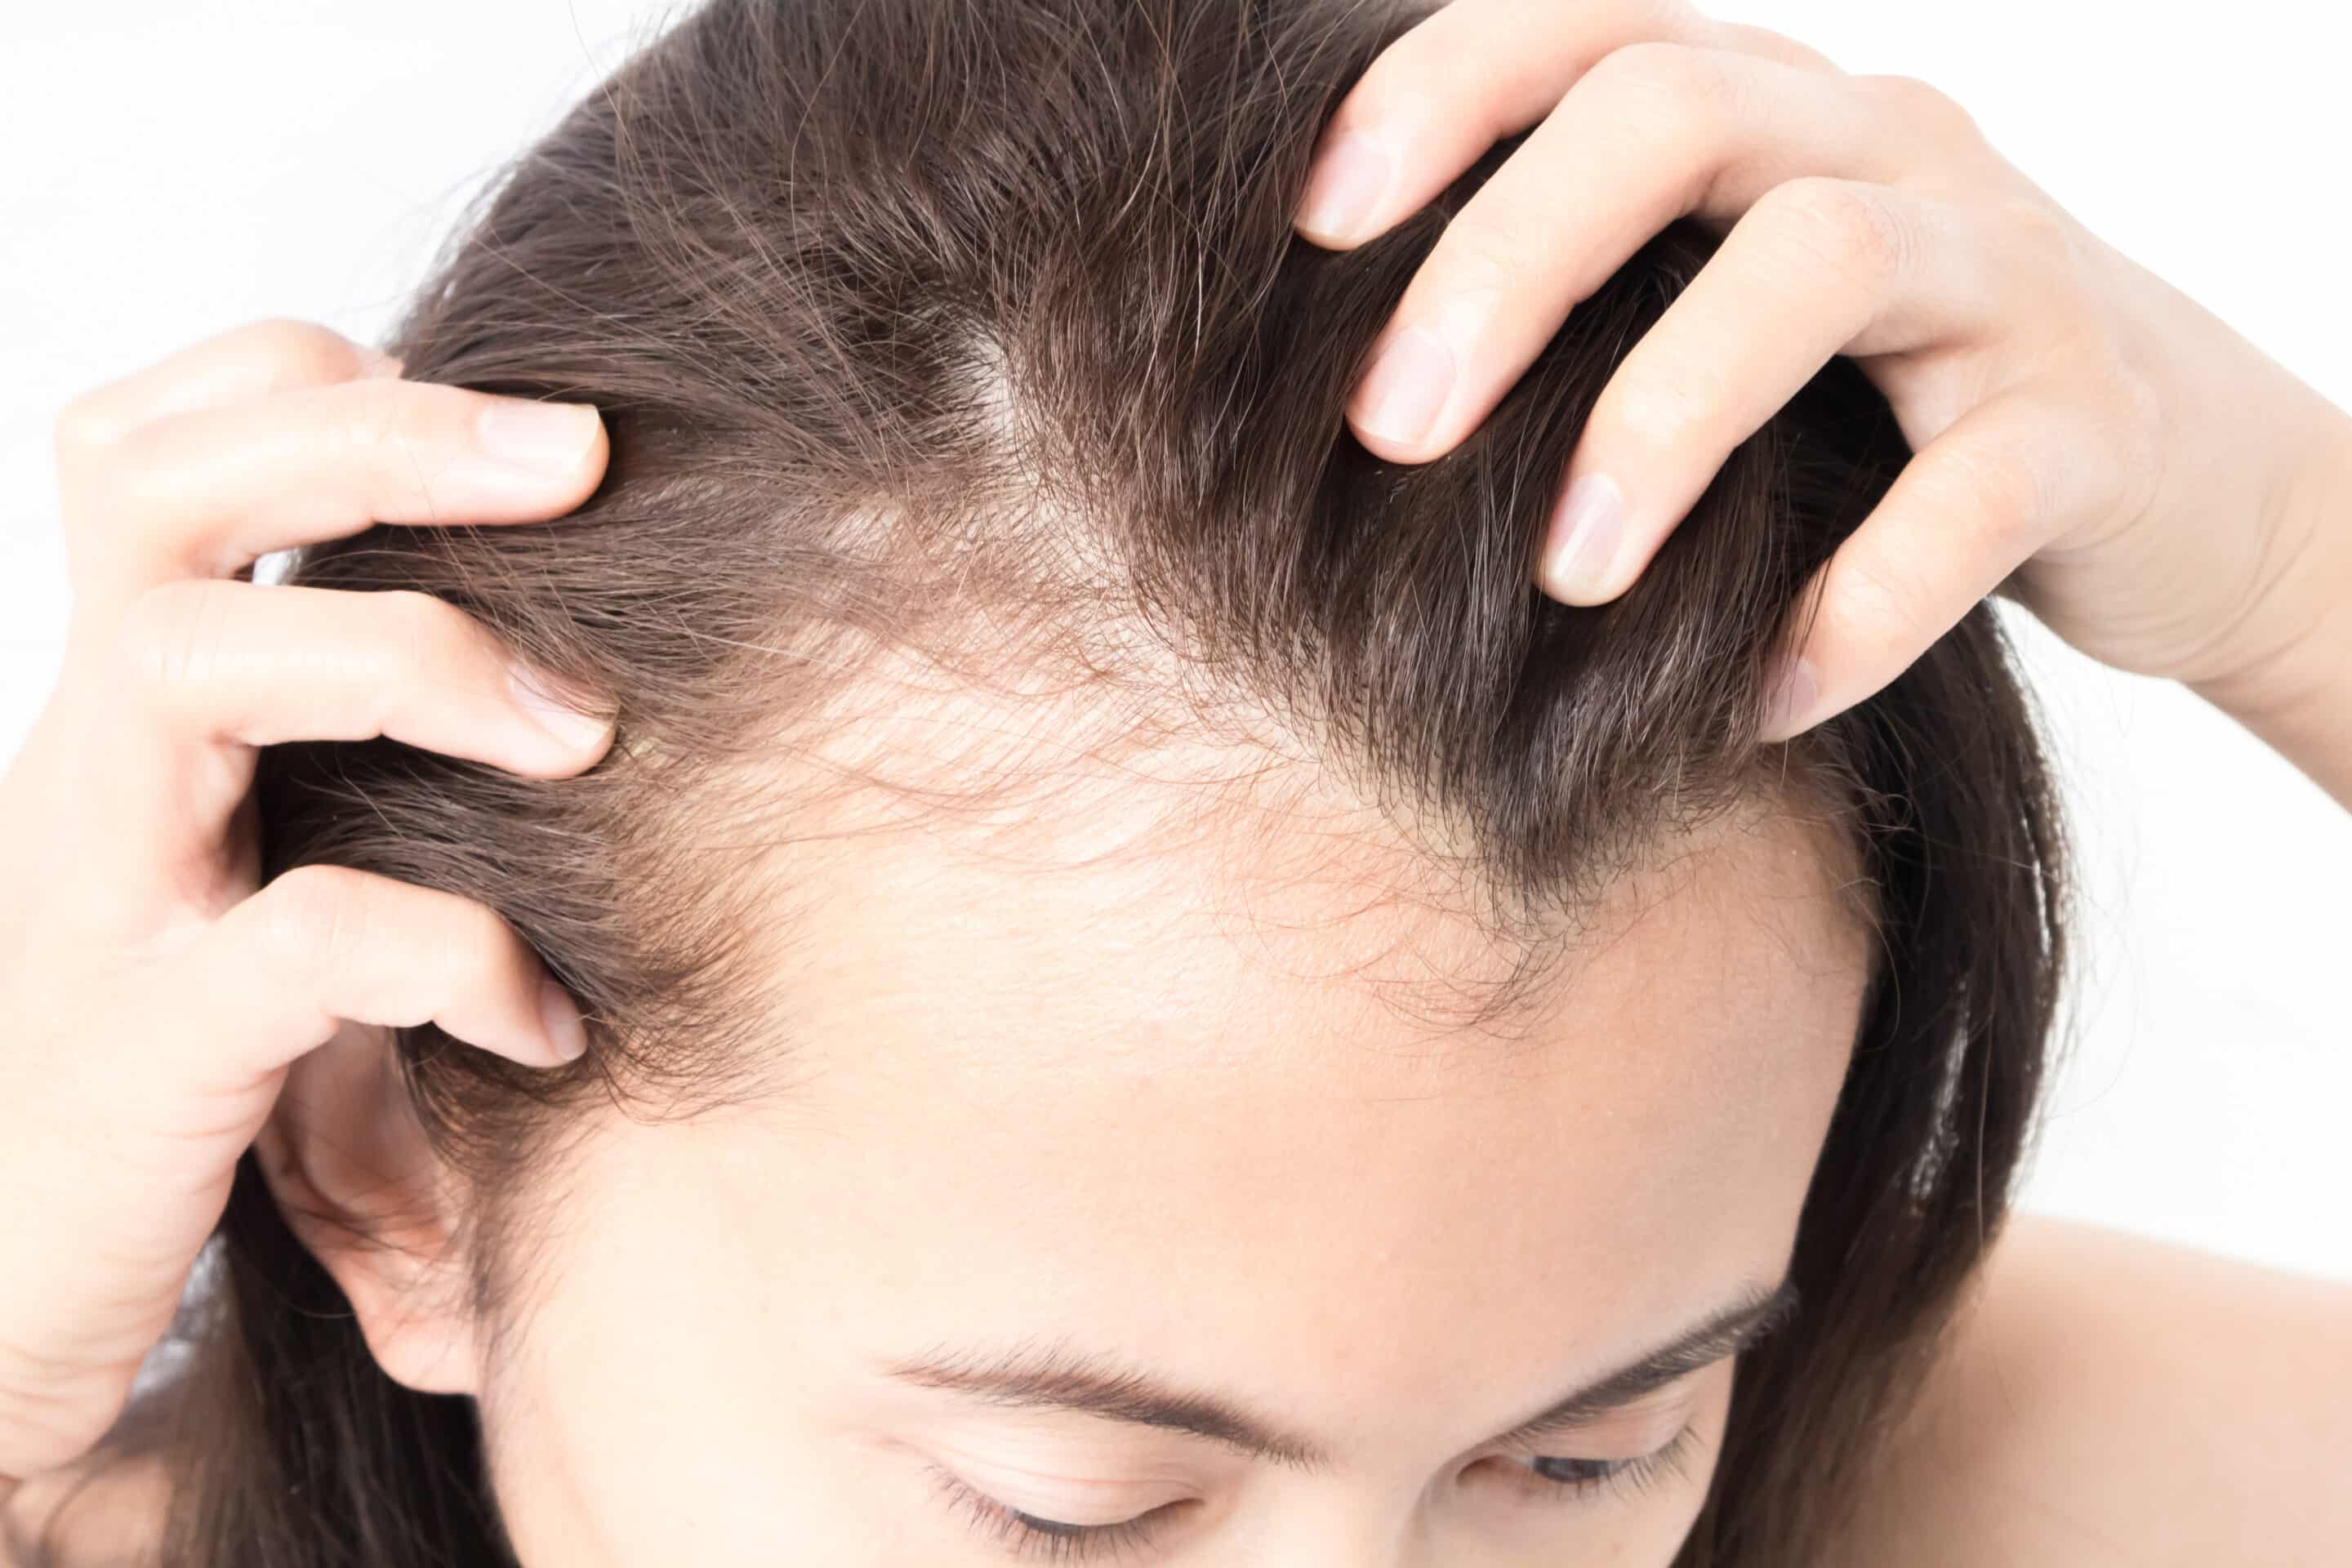 Eine Frau mit Haarausfall verwendet Priorin gegen ihre immer lichter werdenden Haare